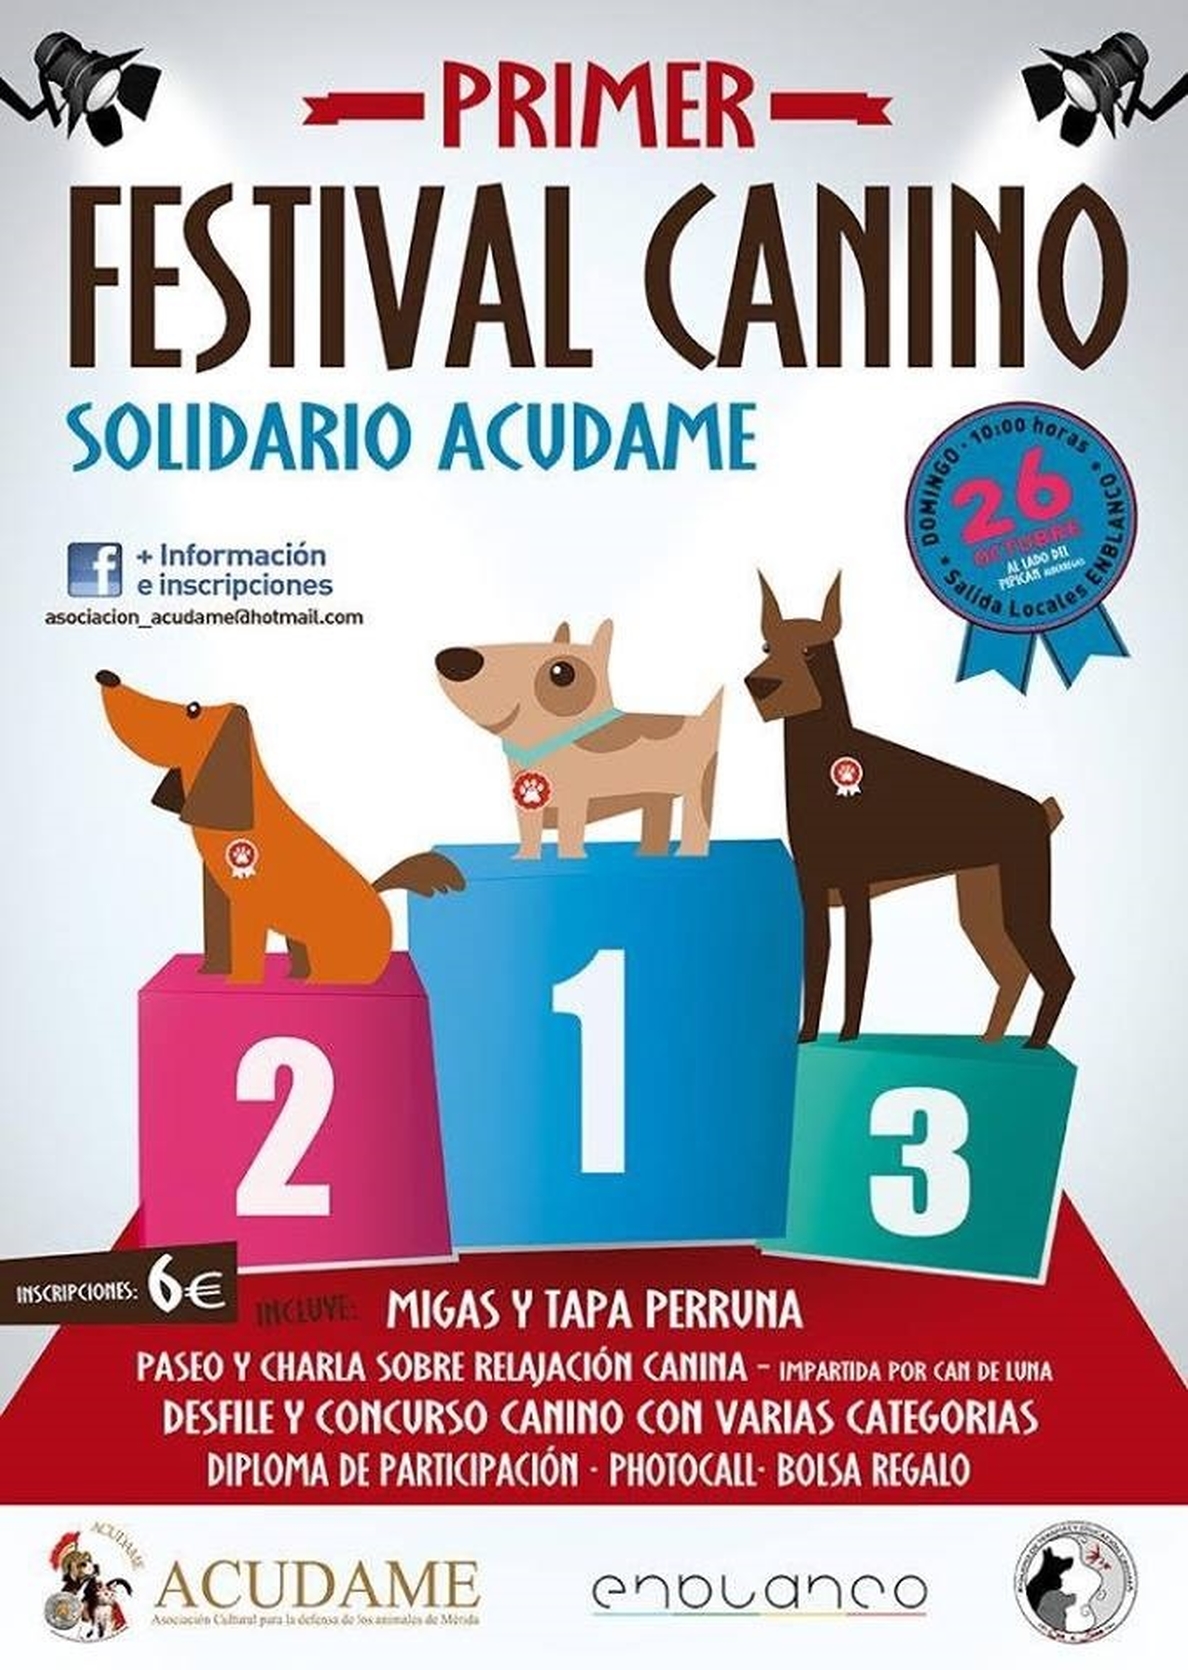 La asociación Acudame organiza un festival canino solidario en Mérida para recabar fondos para los perros abandonados